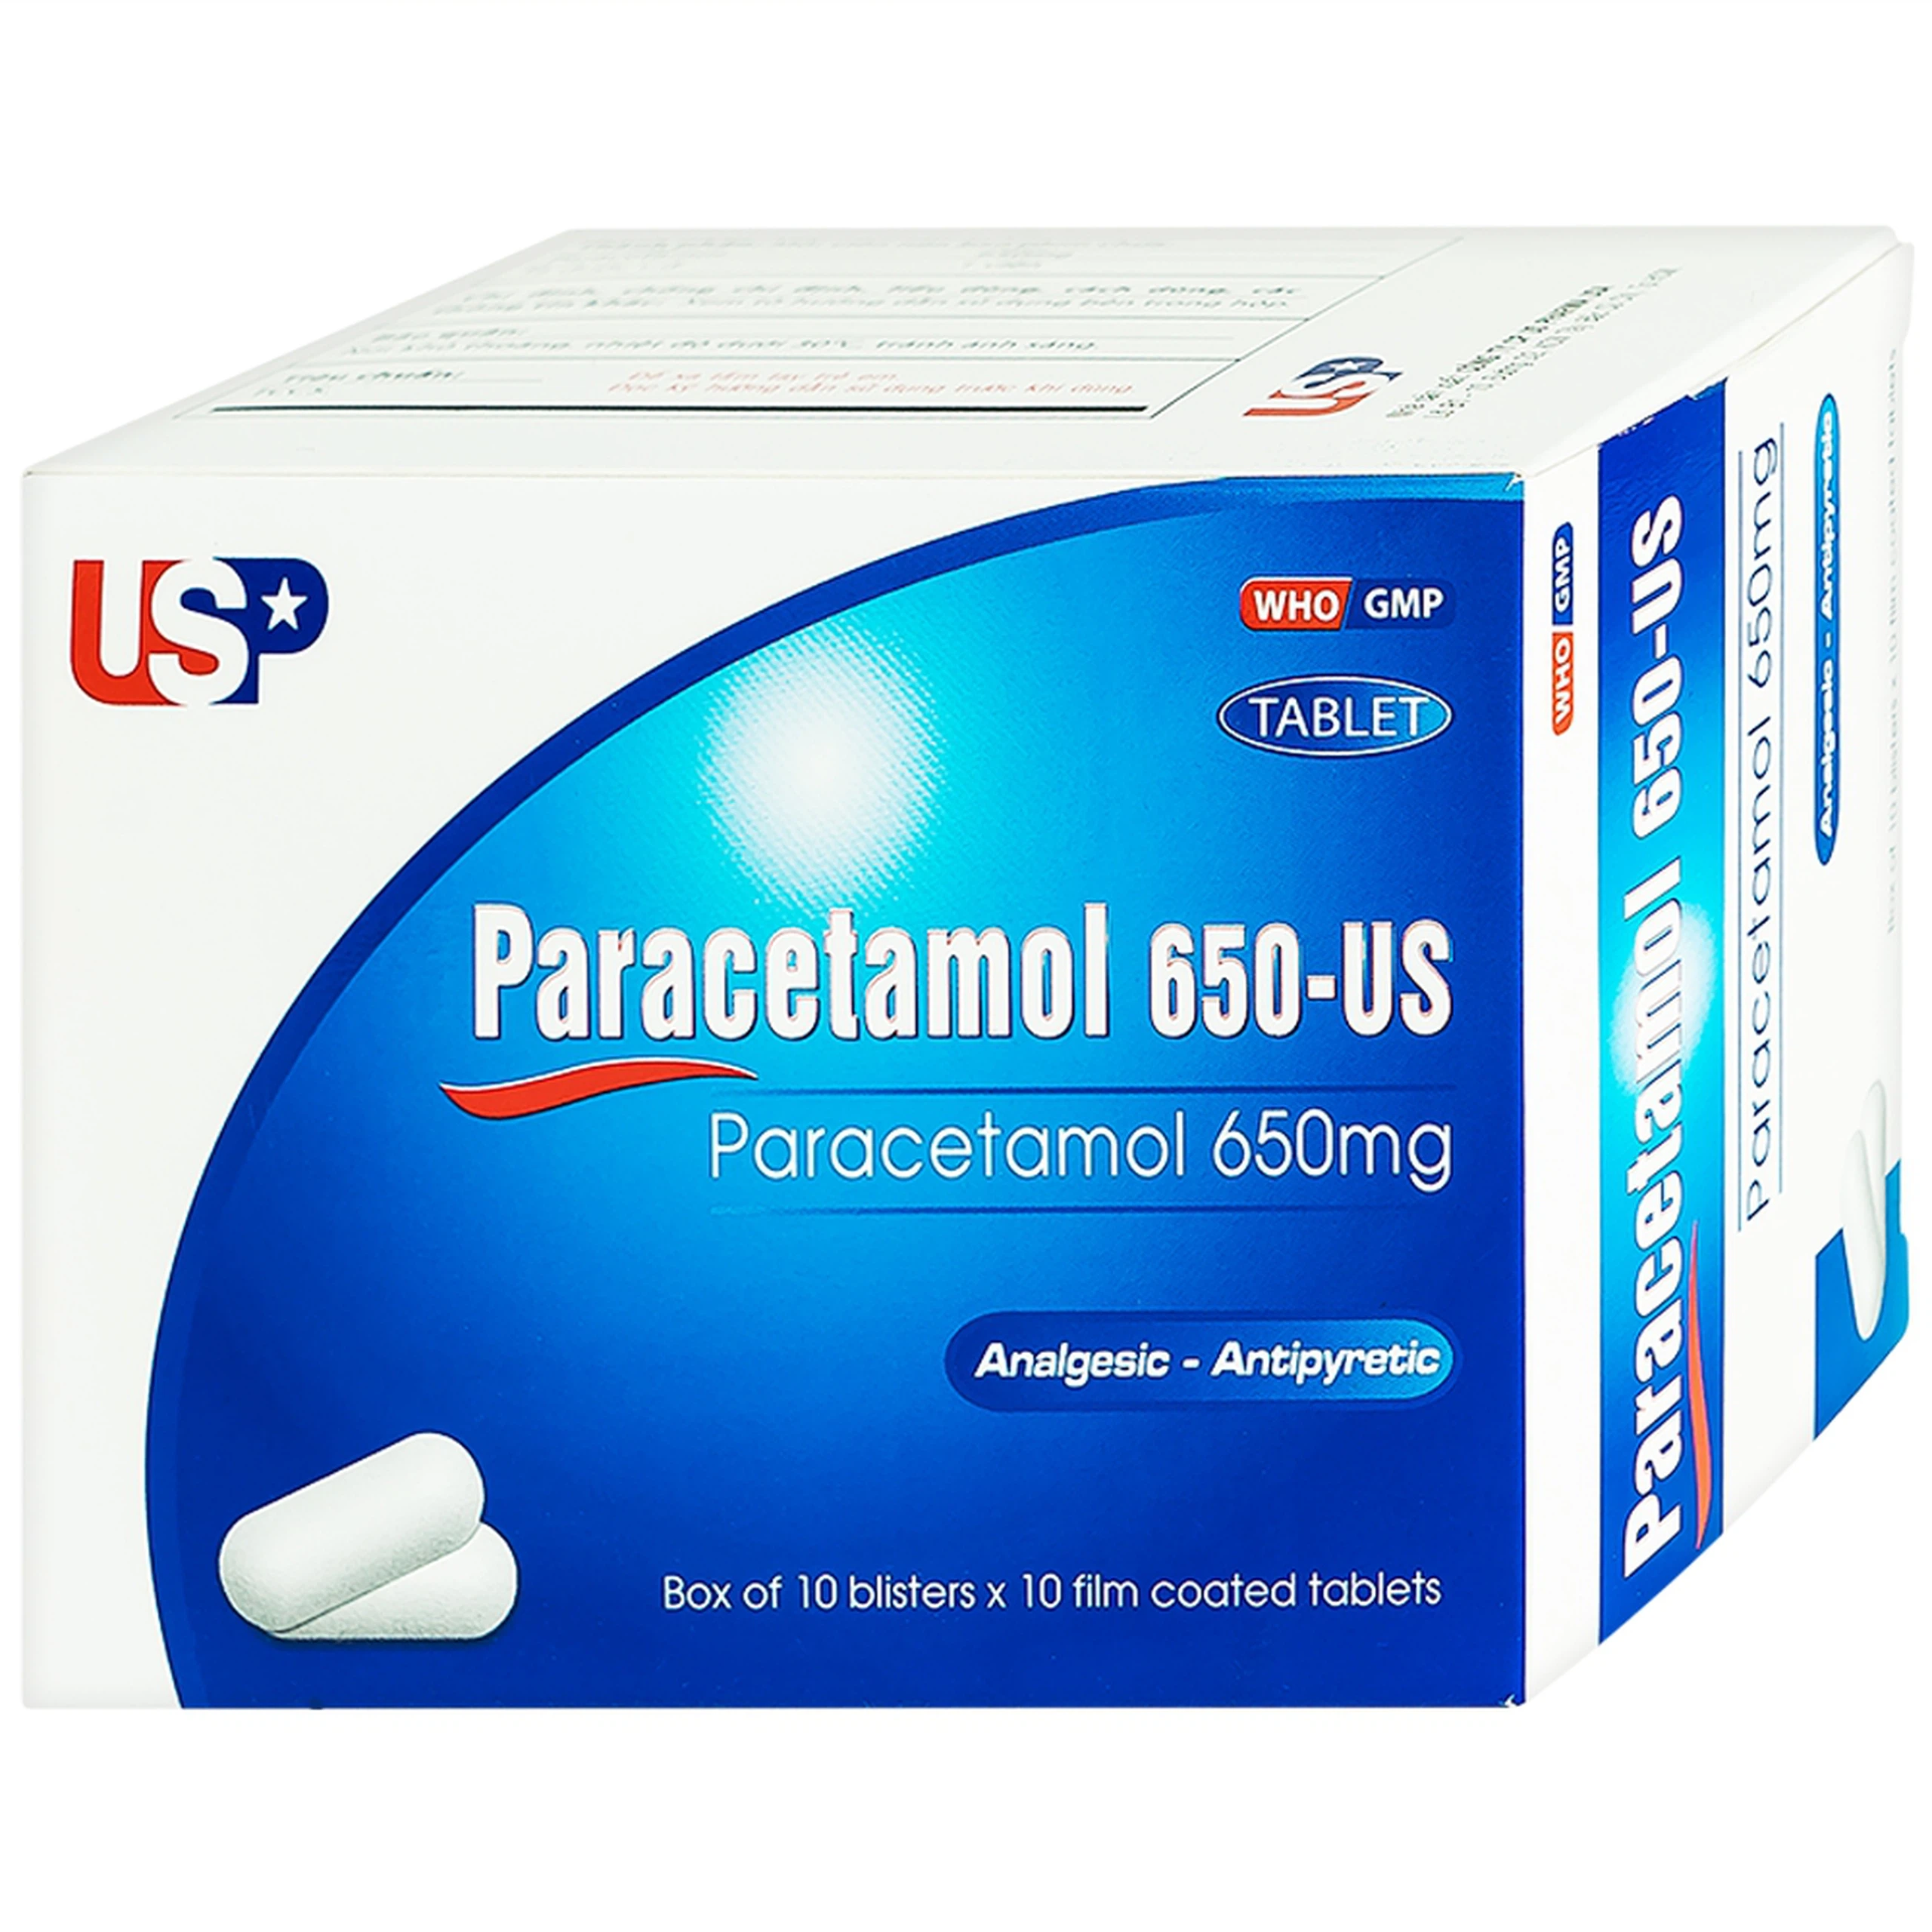 Viên nén Paracetamol 650-US giảm đau, hạ sốt, giảm chứng nhức đầu, đau răng (10 vỉ x 10 viên)